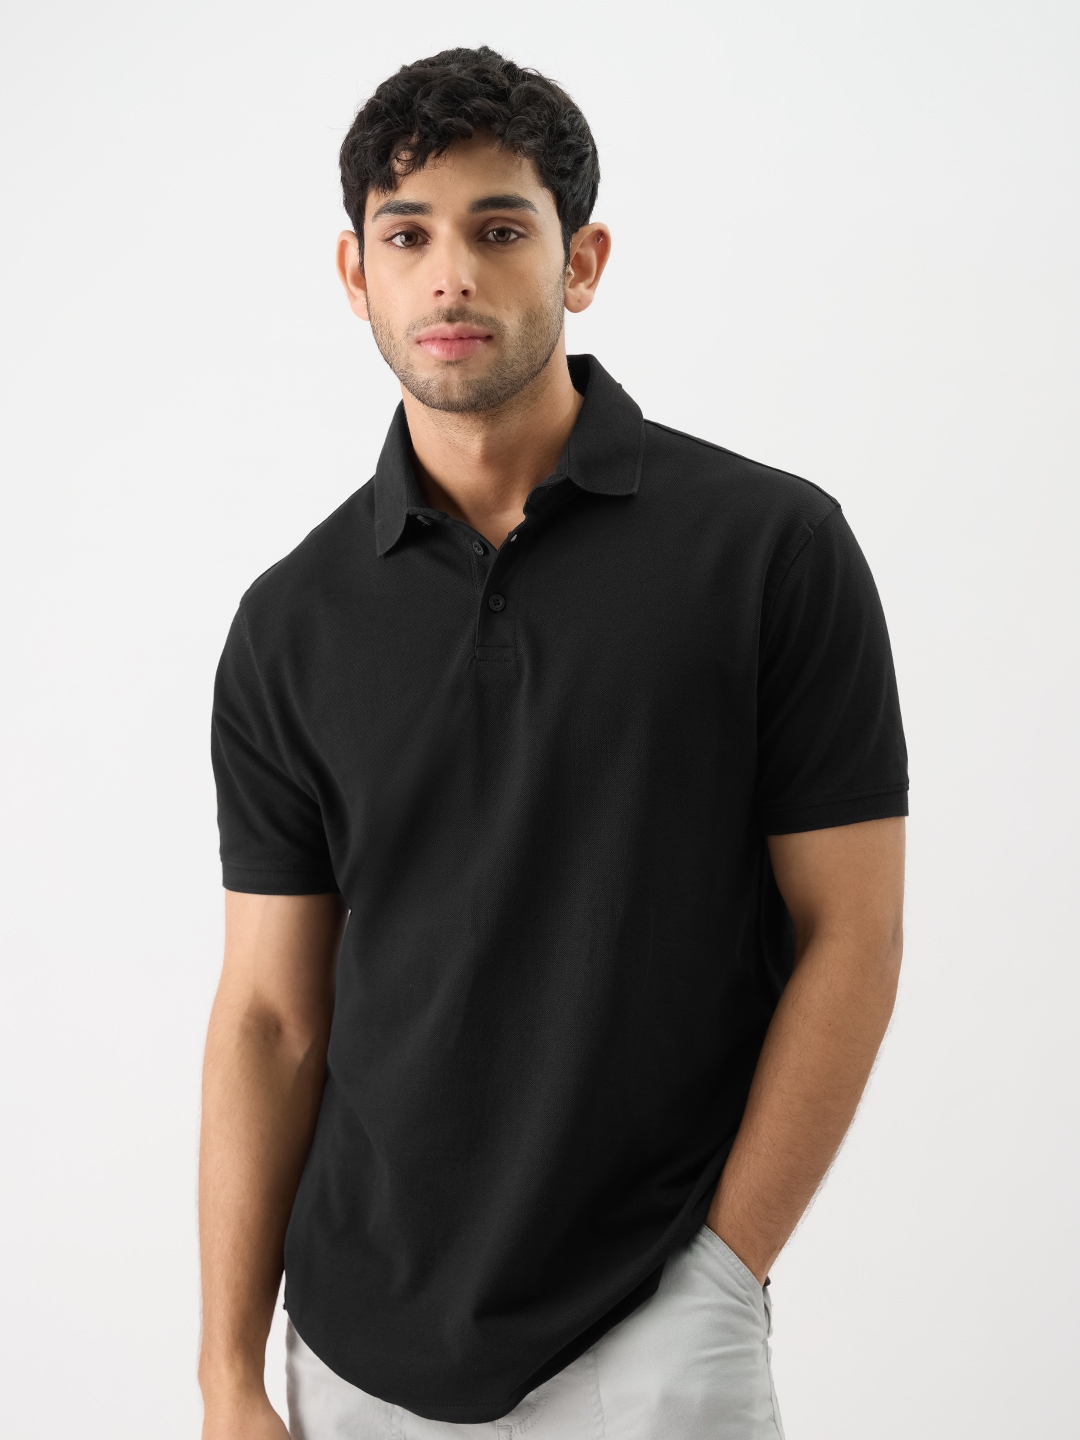 Men's Solids: Black Polo T-Shirt